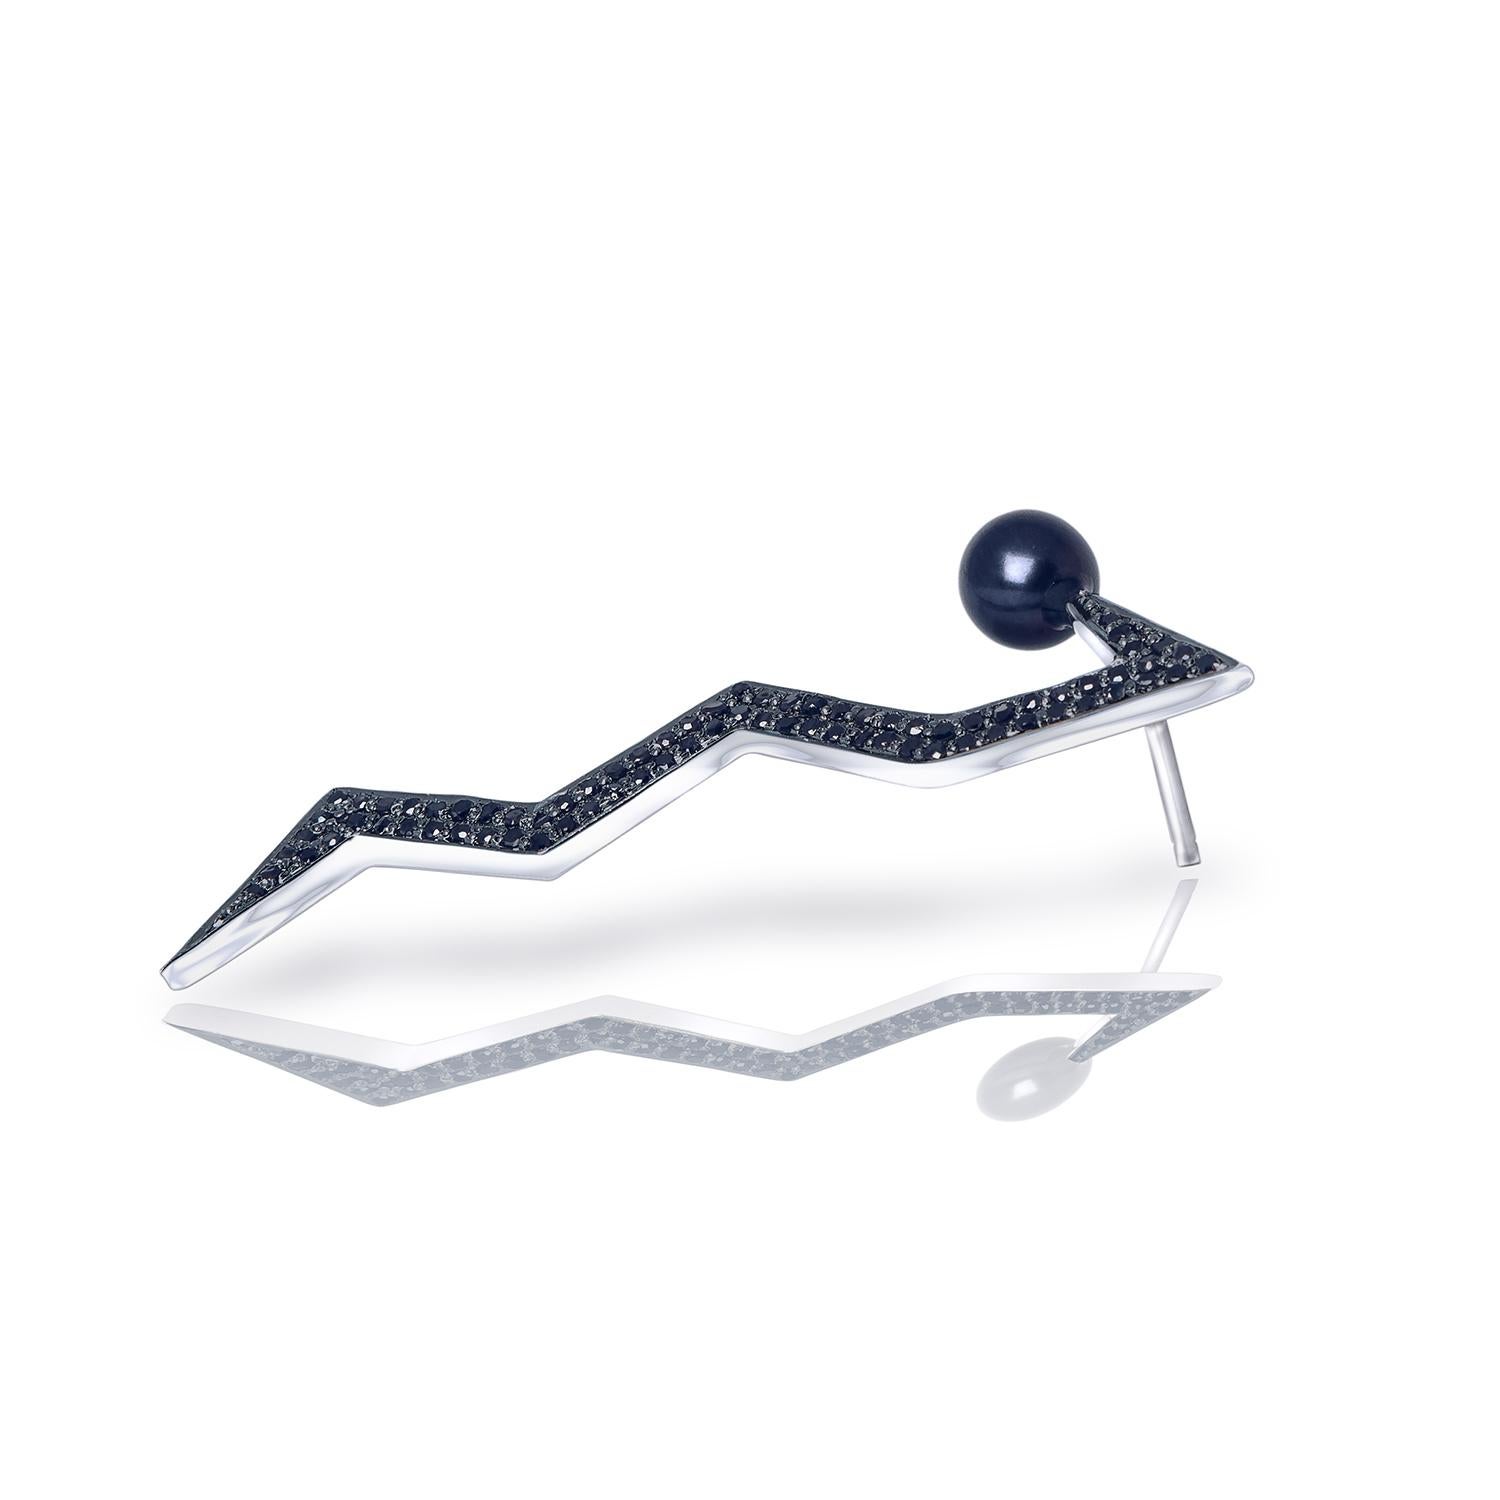 Tropfenförmige Ohrringe aus poliertem Sterlingsilber, besetzt mit schwarzen Diamanten und bläulicher Pfauenperle. Elegantes und modernes Design, inspiriert durch den Space-Age-Chic der 60er Jahre. Das Produkt wurde in L'Officiel Latvia